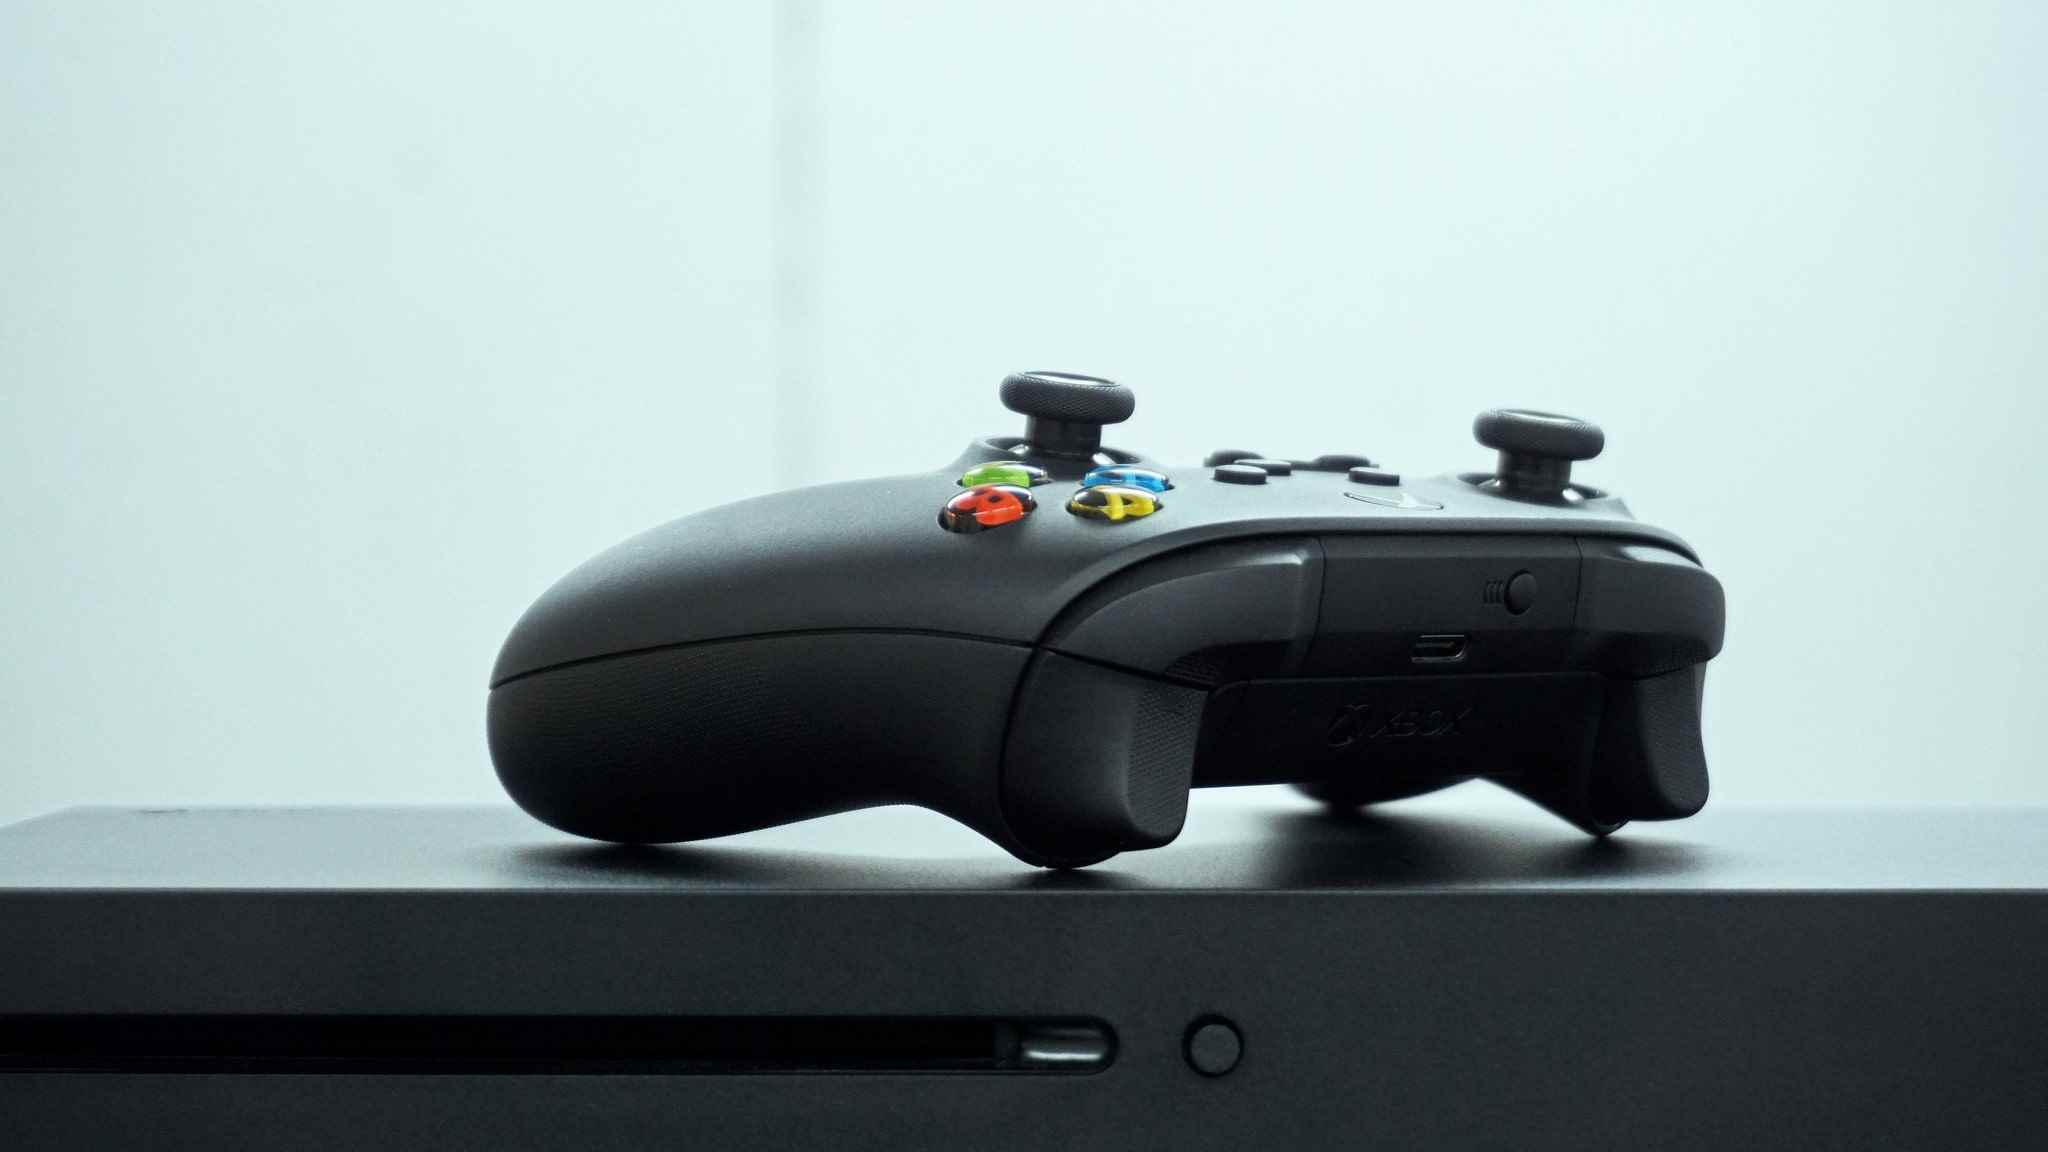 Xbox Kablosuz Oyun Kumandası ile yan yana yatan Xbox Series X'in görüntüsü.